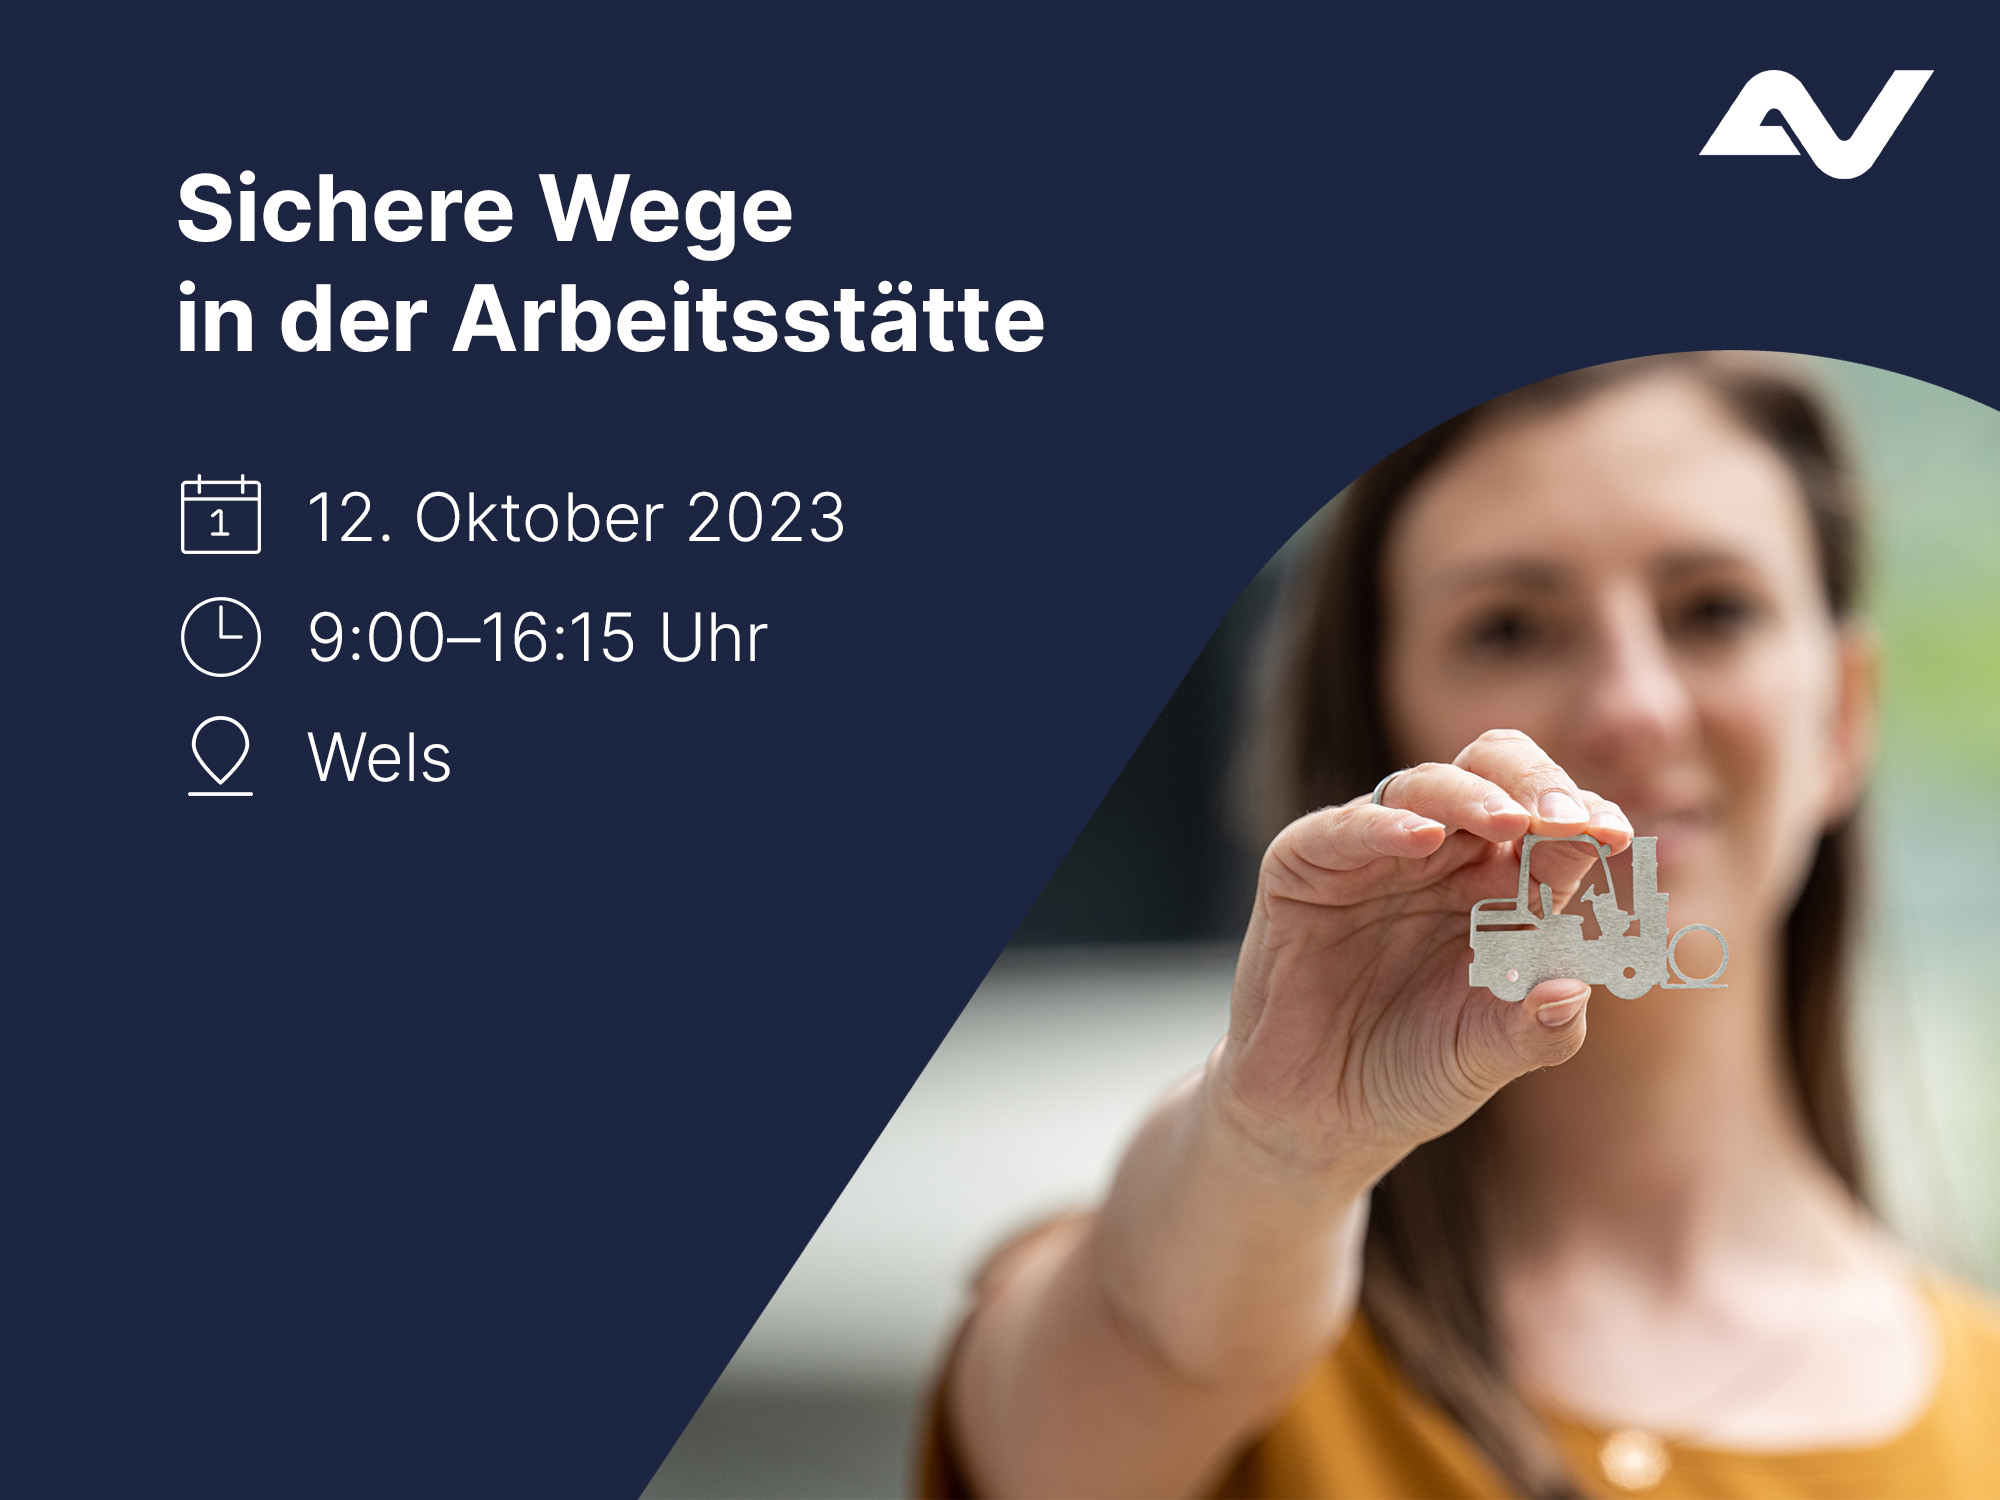 AUVA-Veranstaltungsankündigung "Sichere Wege in der Arbeitsstätte! am 12.10.2023 in Wels. Frau hält 2D-Modell eines Gabelstaplers aus Metall in Richtung Kamera.